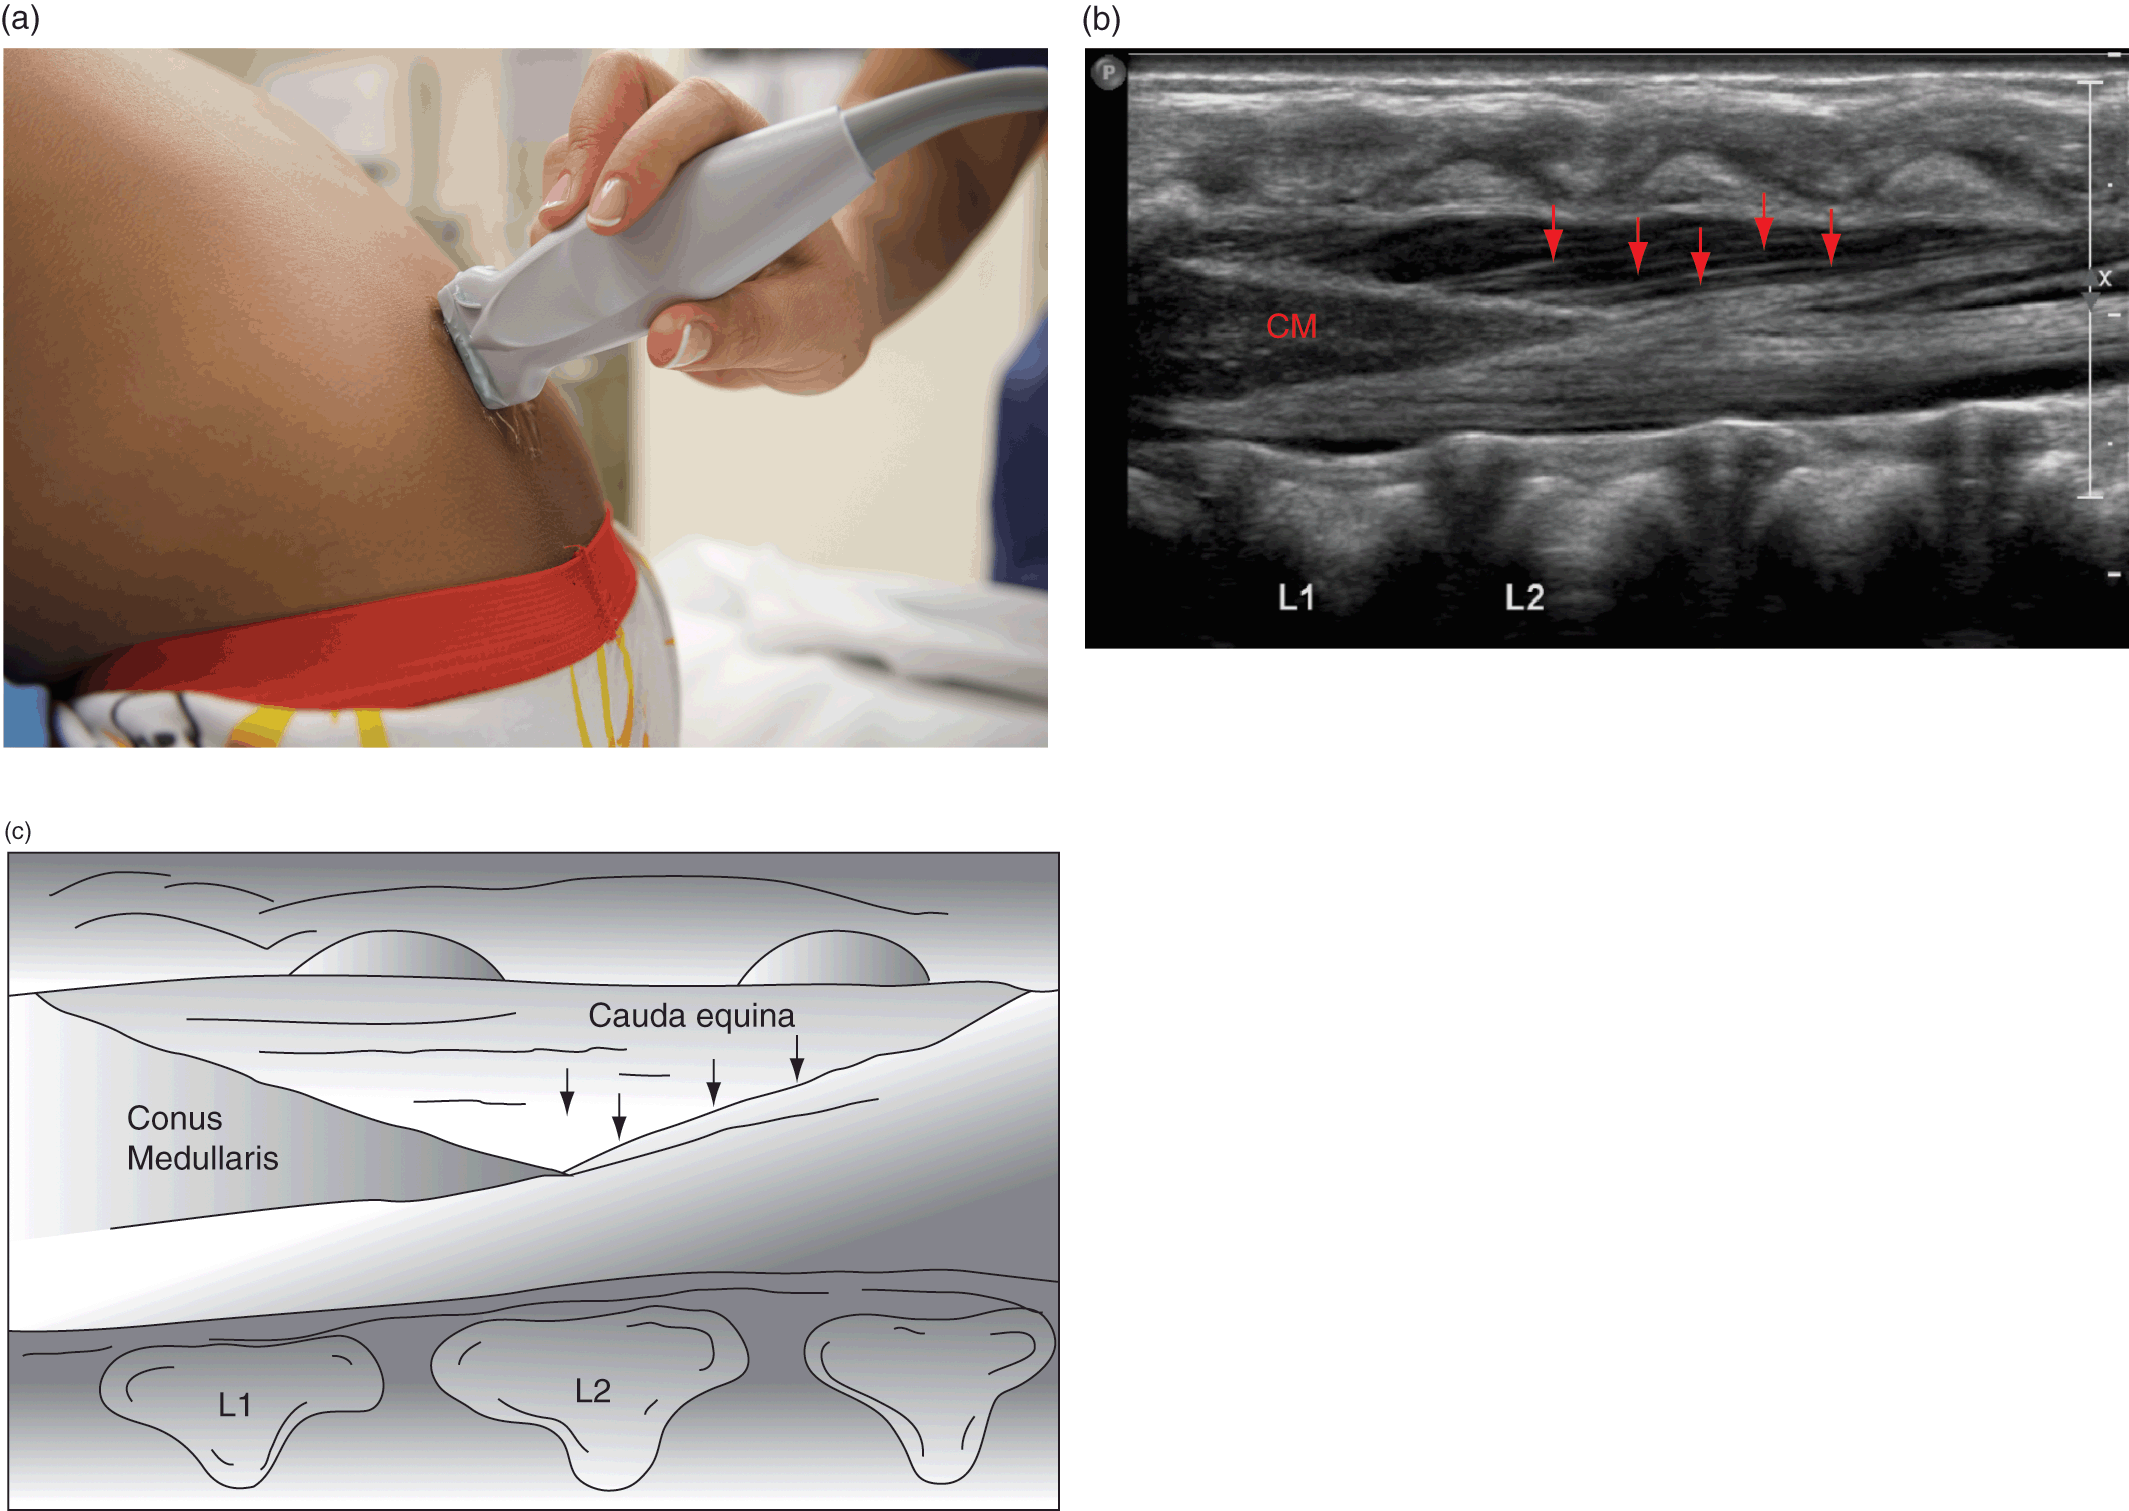 conus medullaris ultrasound